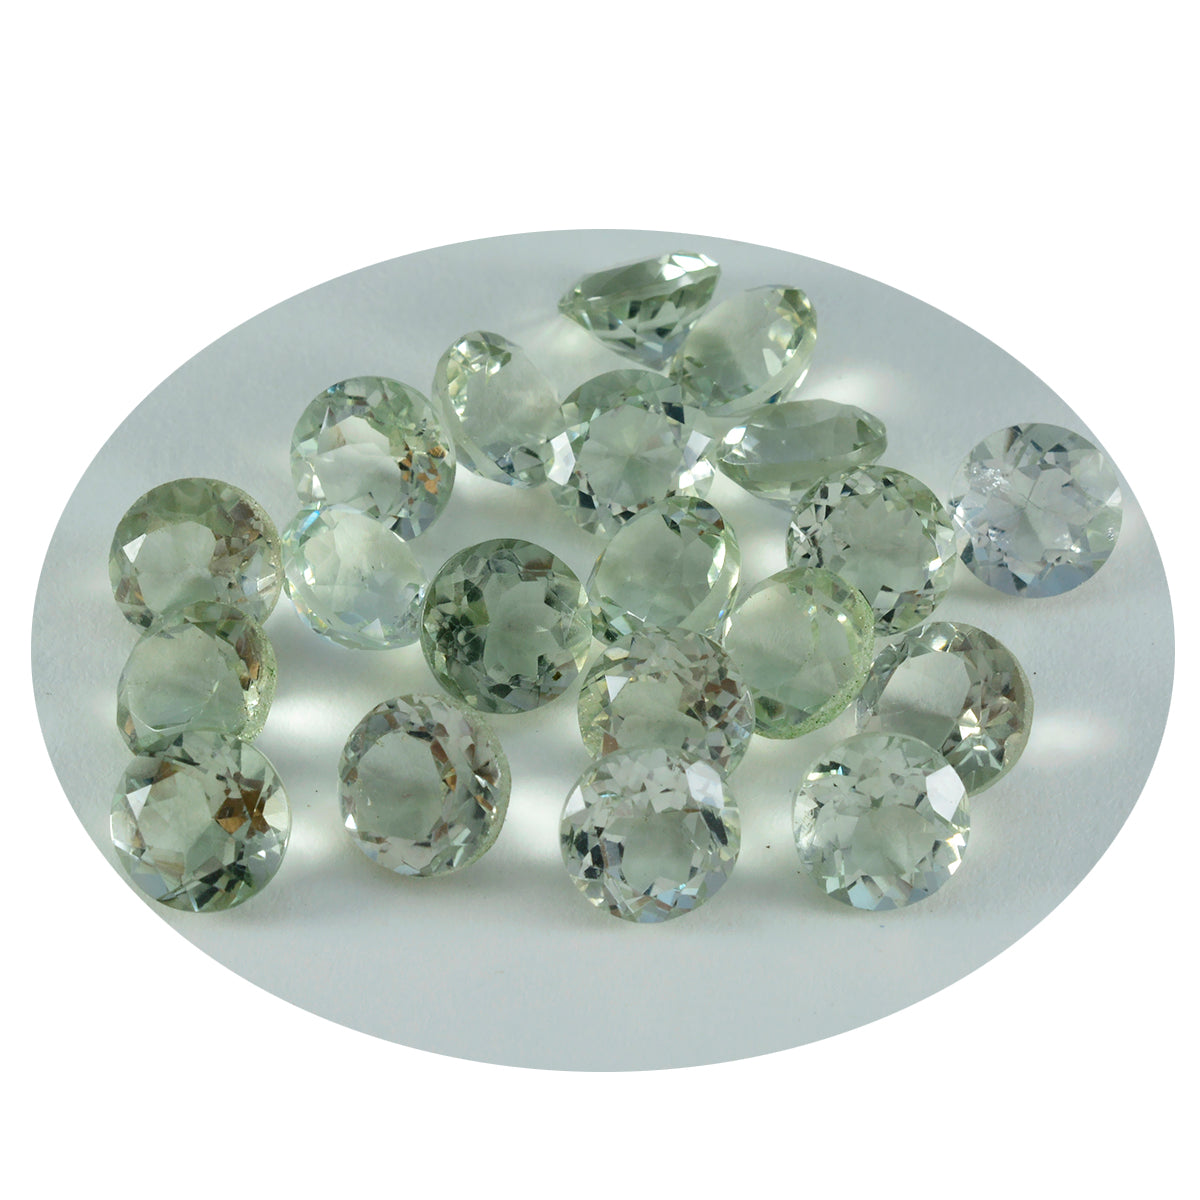 Riyogems 1 pièce d'améthyste verte à facettes 5x5mm, forme ronde, belle qualité, pierres précieuses en vrac